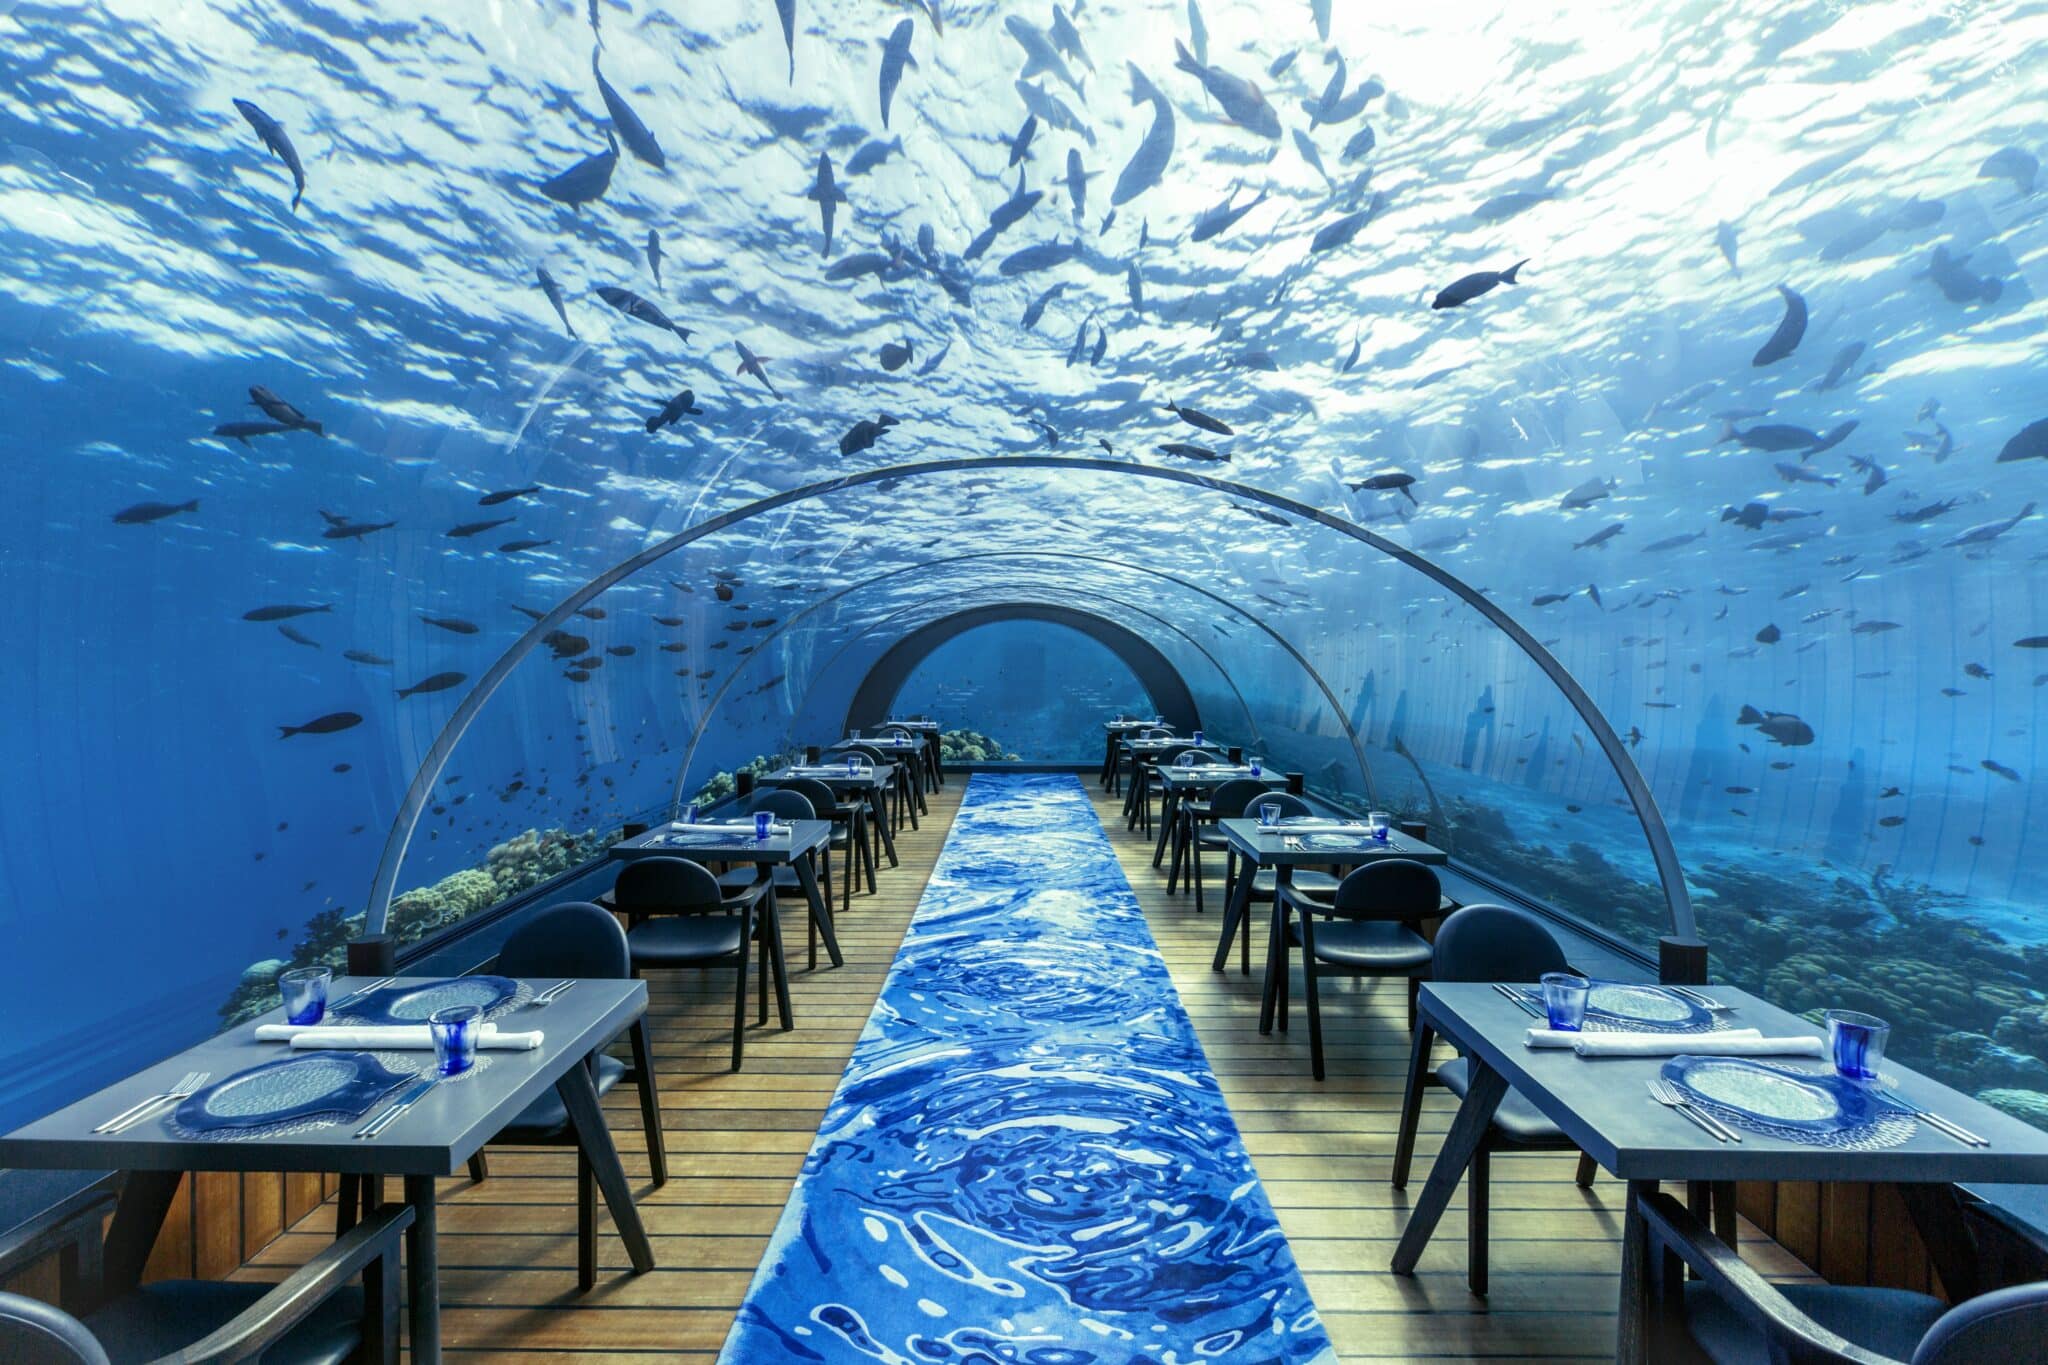 Отпразднуйте свою единственную в жизни любовь под водой, проведя церемонию в уникальном подводном ресторане Hurawalhi «5.8», идеальном месте для осуществления ваших мечтаний. Проживите один из самых романтичных моментов жизни в самом большом в мире полностью стеклянном подводном ресторане, расположенном на глубине 5,8 метров под поверхностью волн и окруженном великолепным коралловым рифом и завораживающей морской жизнью.